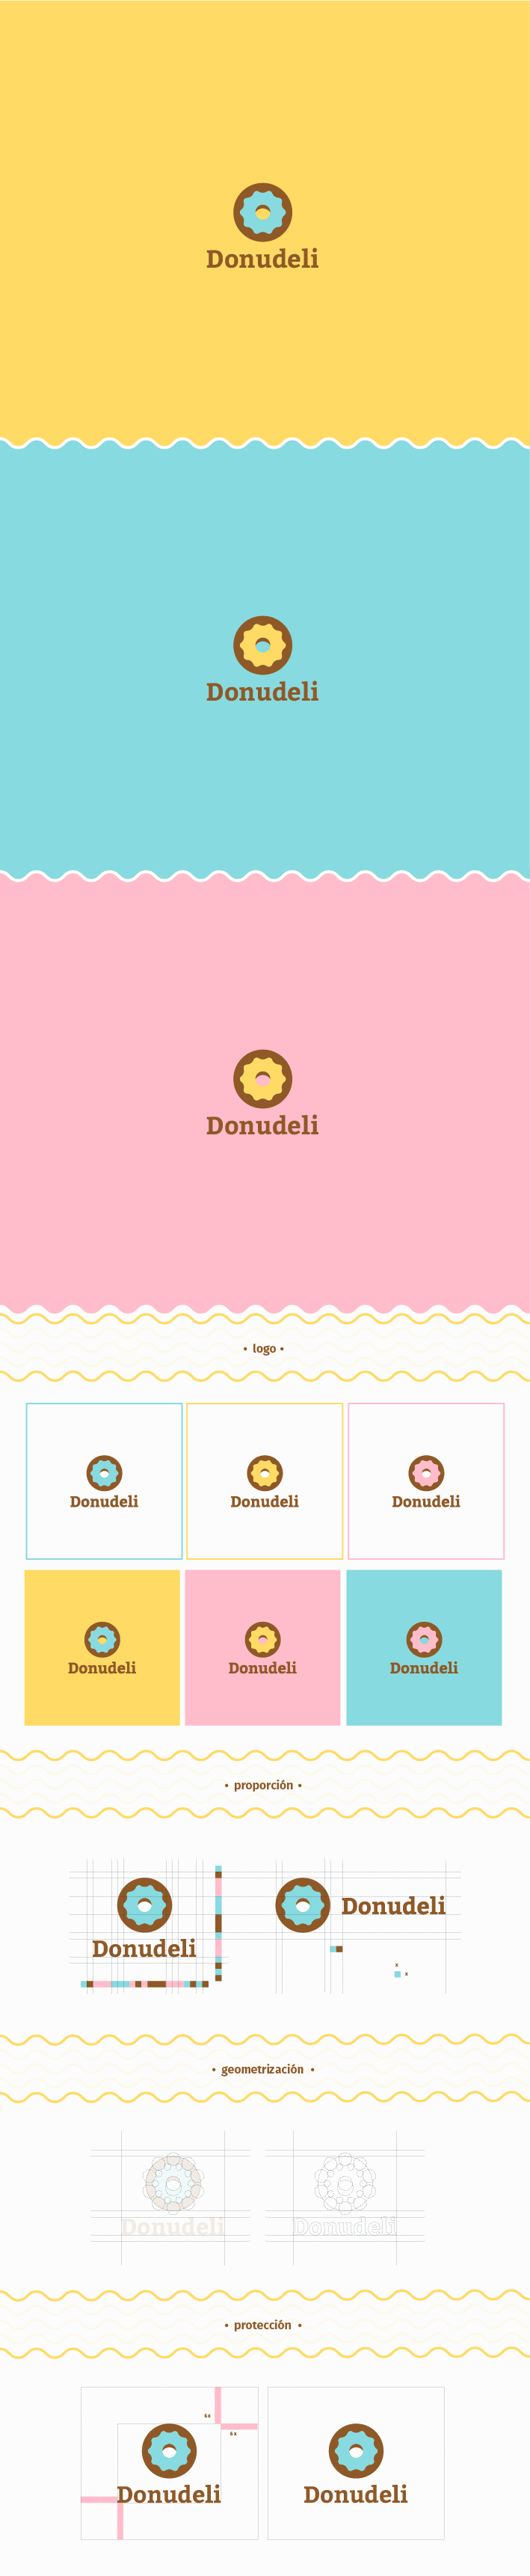 Donudeli Branding 1